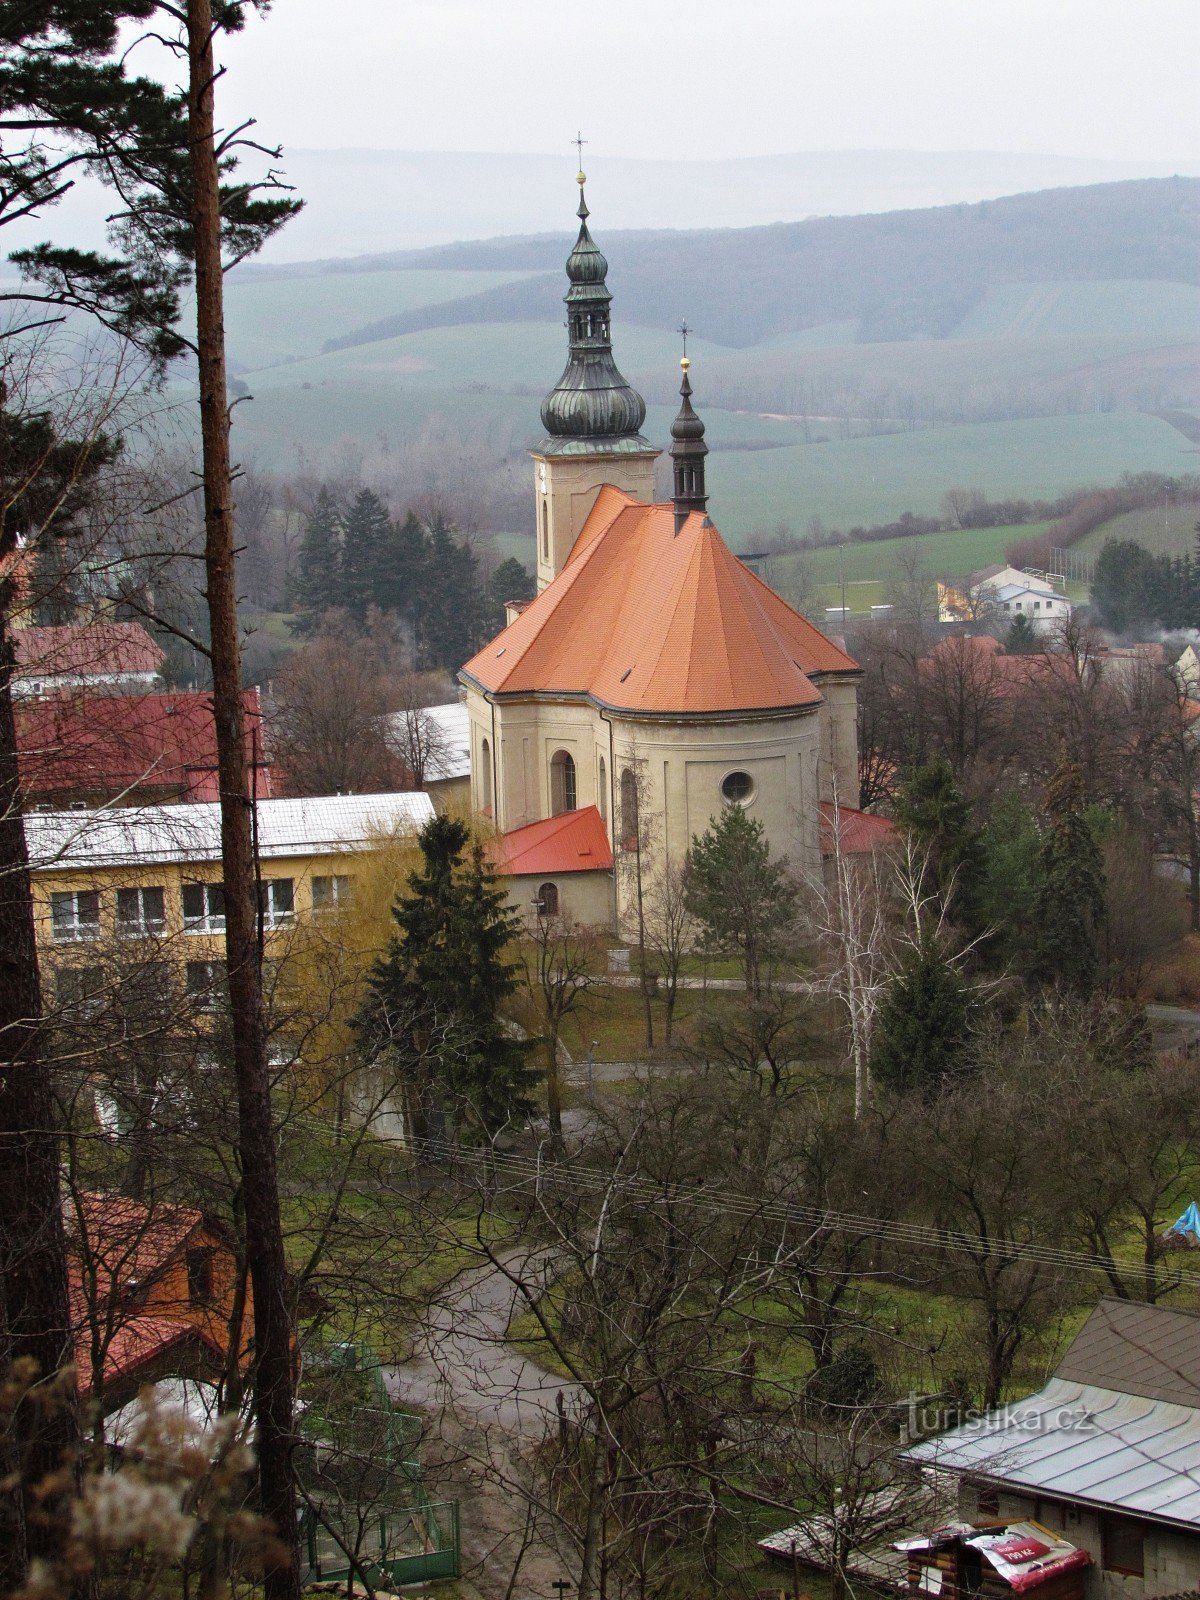 Chřiby - Nhà thờ Đức Mẹ Maria ở Střílky